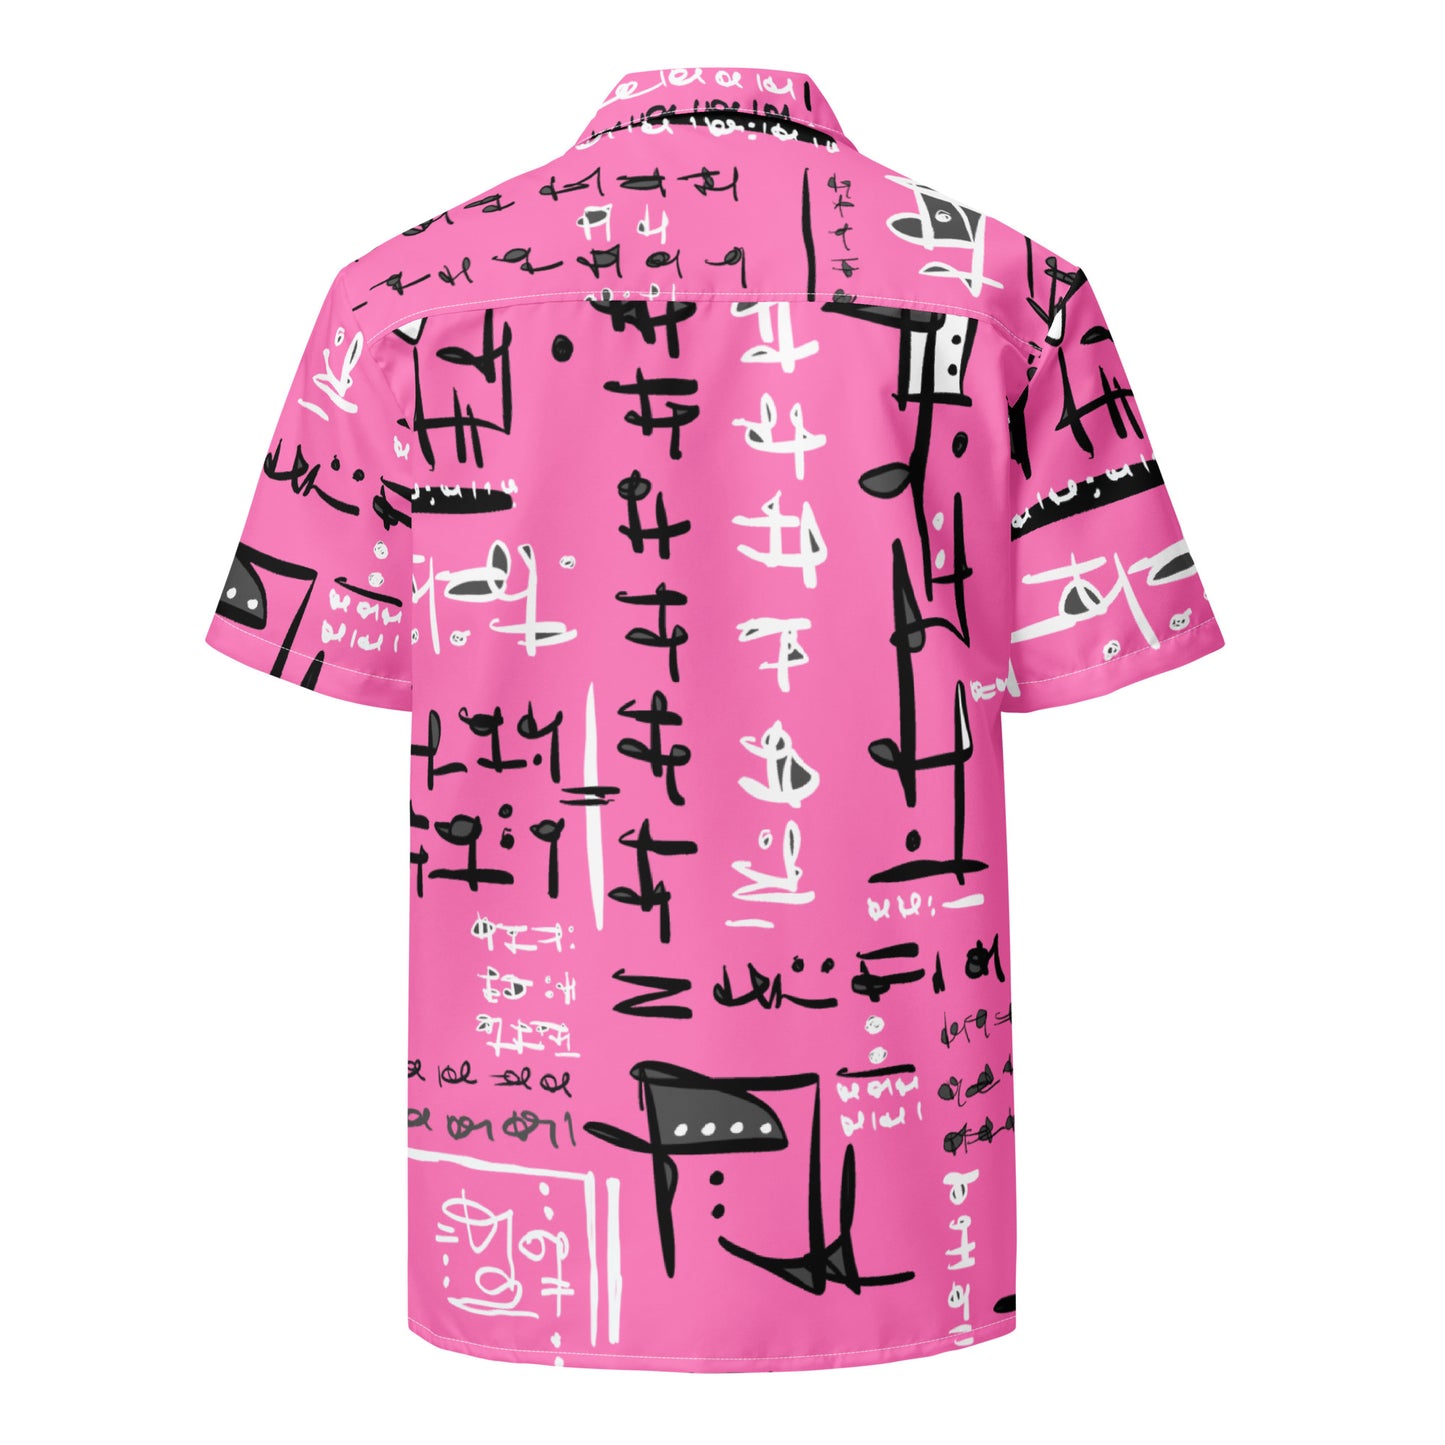 Unisex pink button shirt